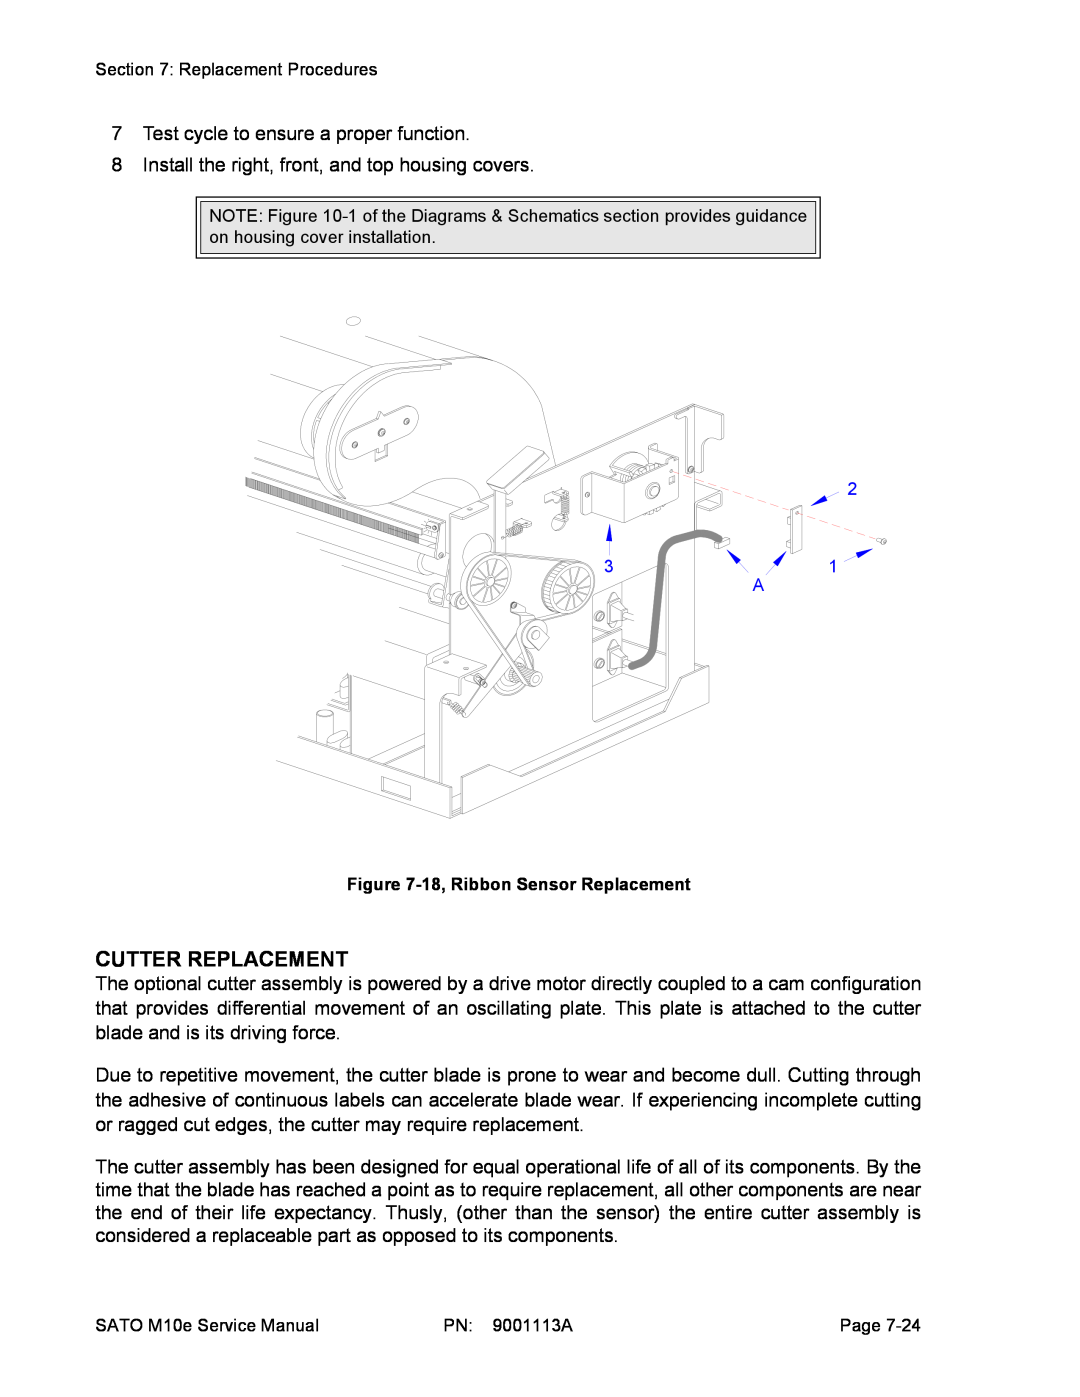 SATO 10e service manual Cutter Replacement 